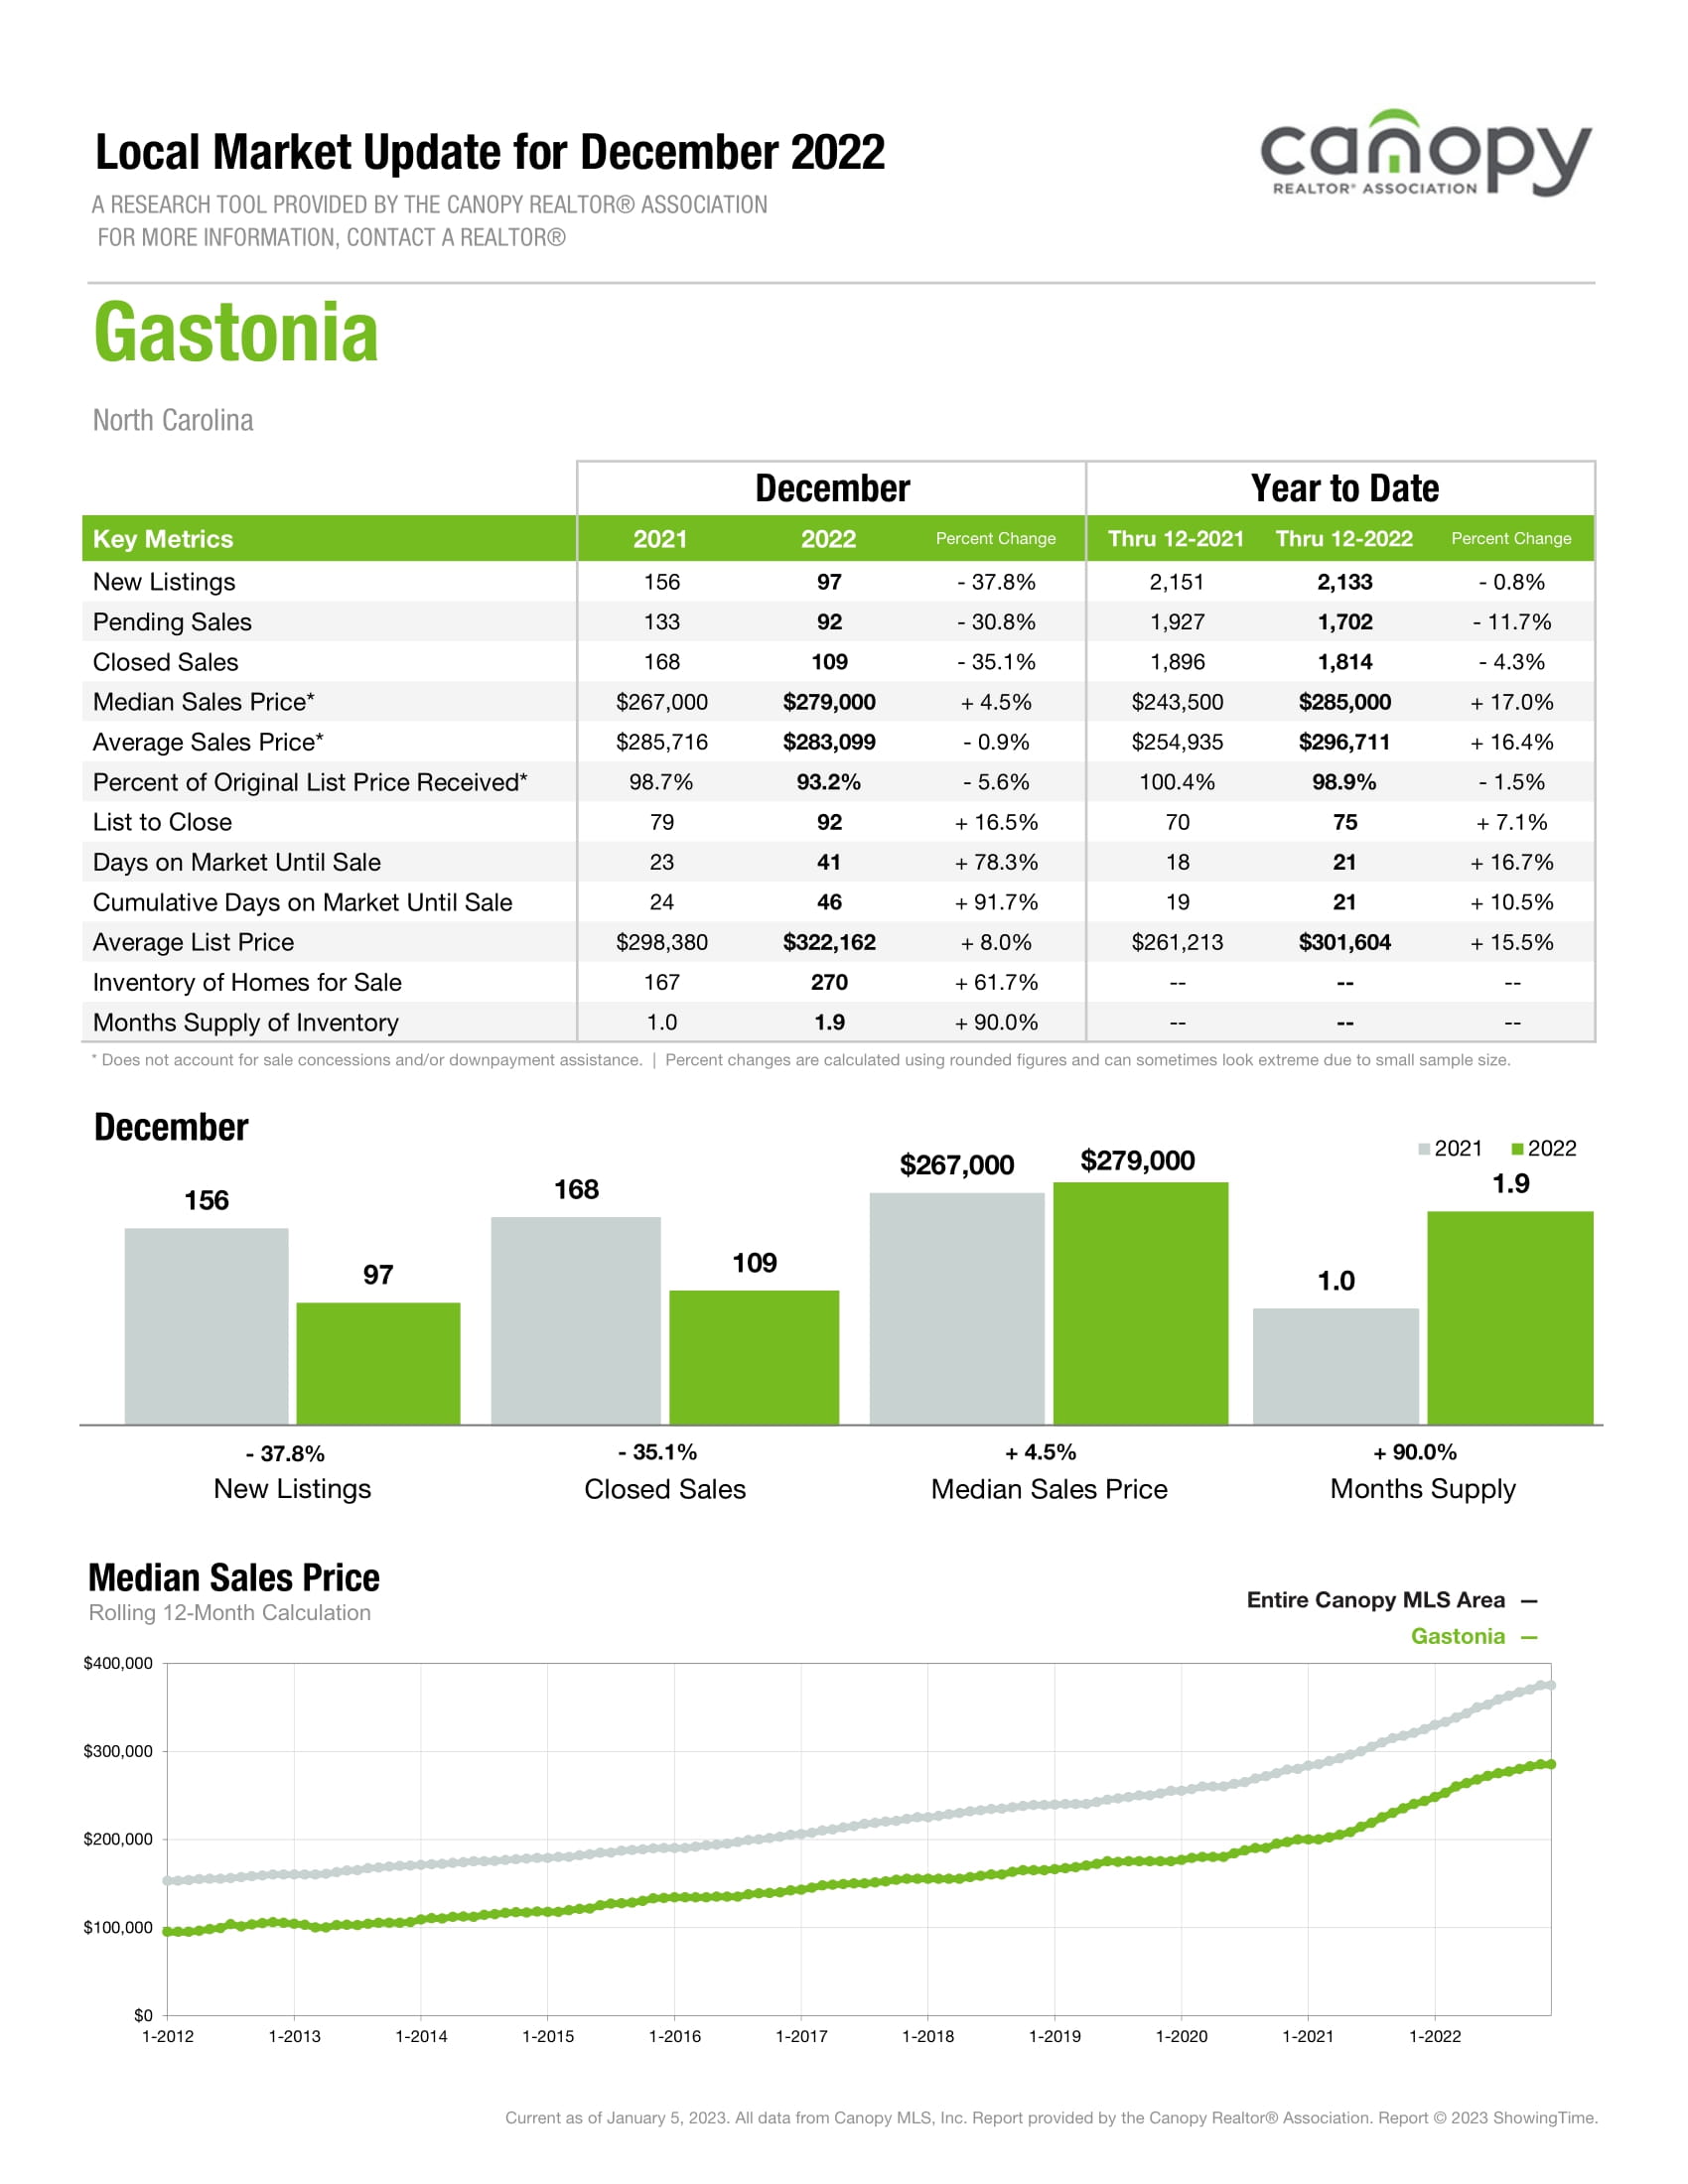 Gastonia-1.jpg